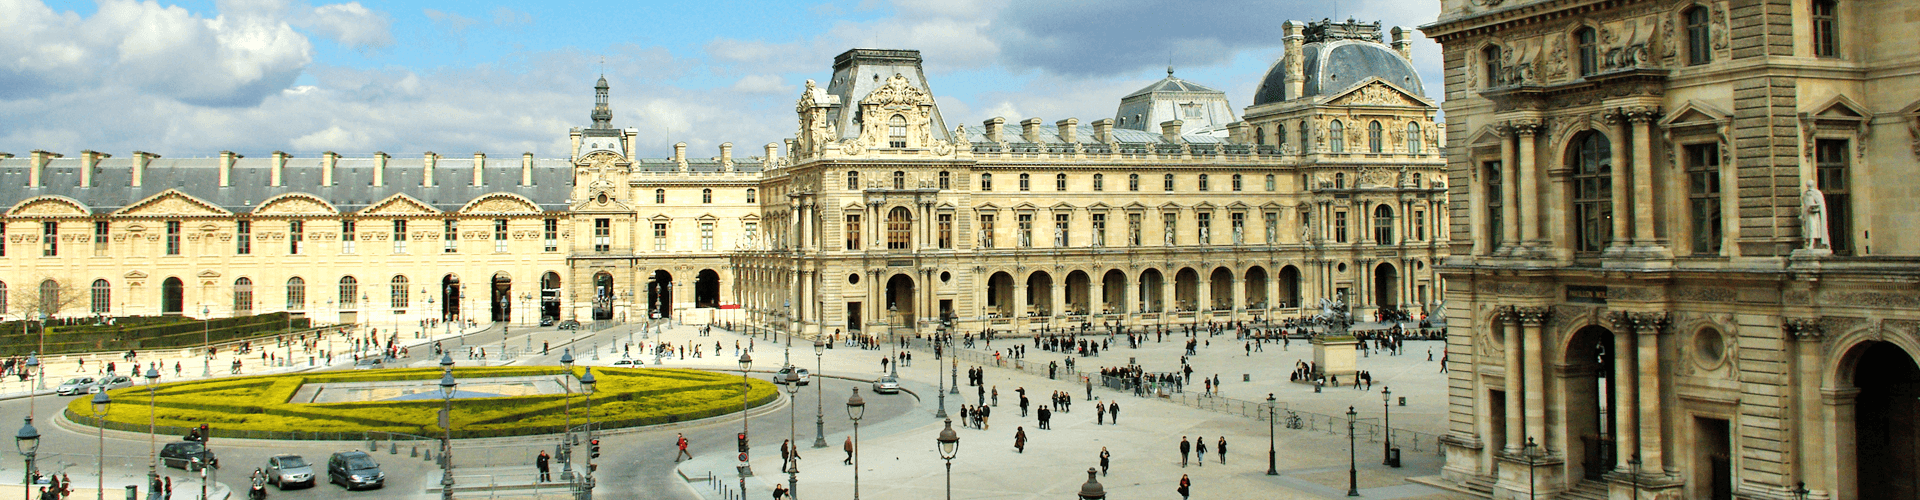 Bezienswaardigheden in Parijs, Ile de France: museum het Louvre